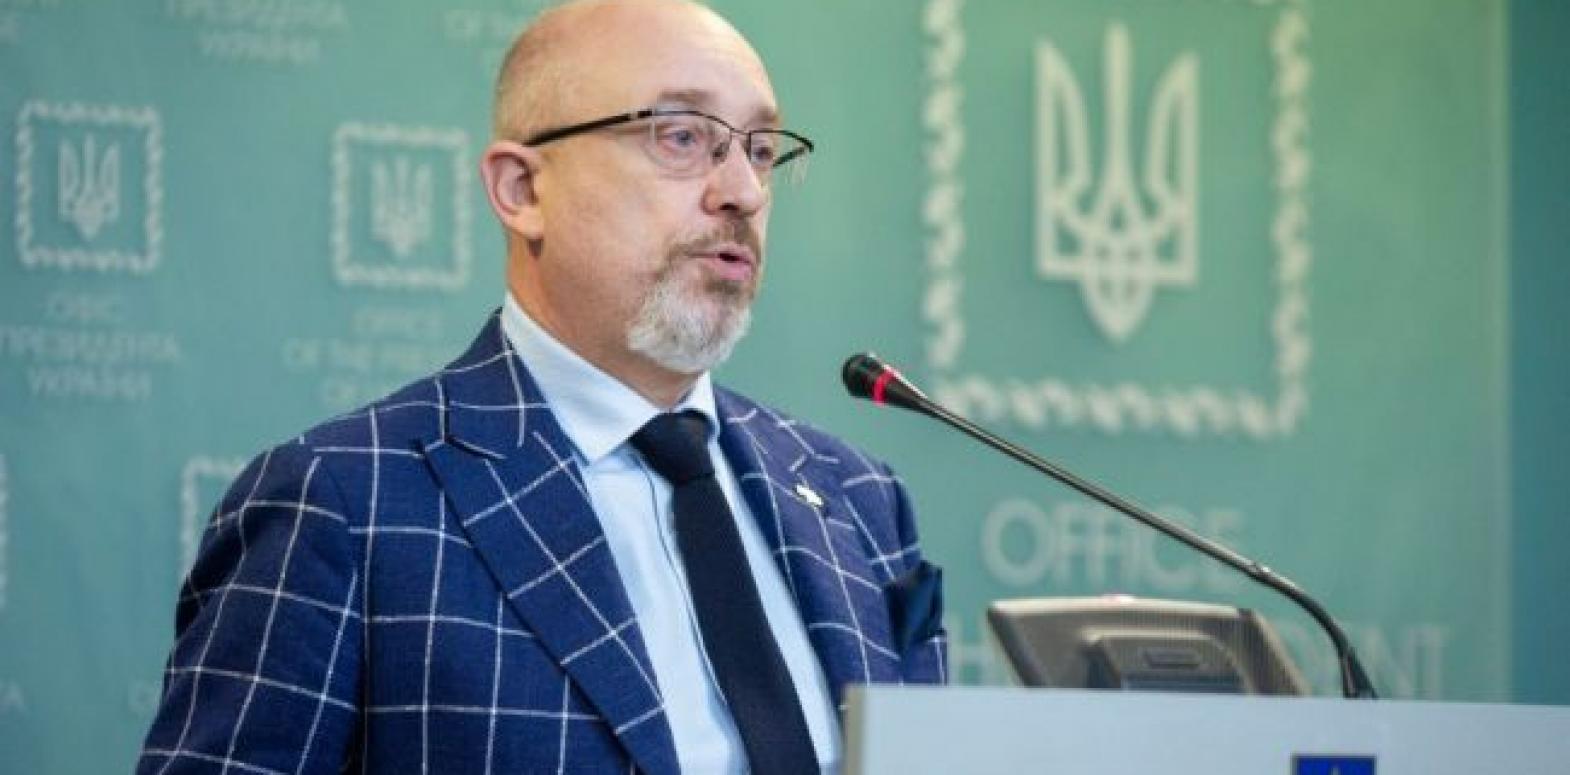 Завершение войны и выборы на Донбассе: в Кабмине дали прогноз по идеям Зеленского